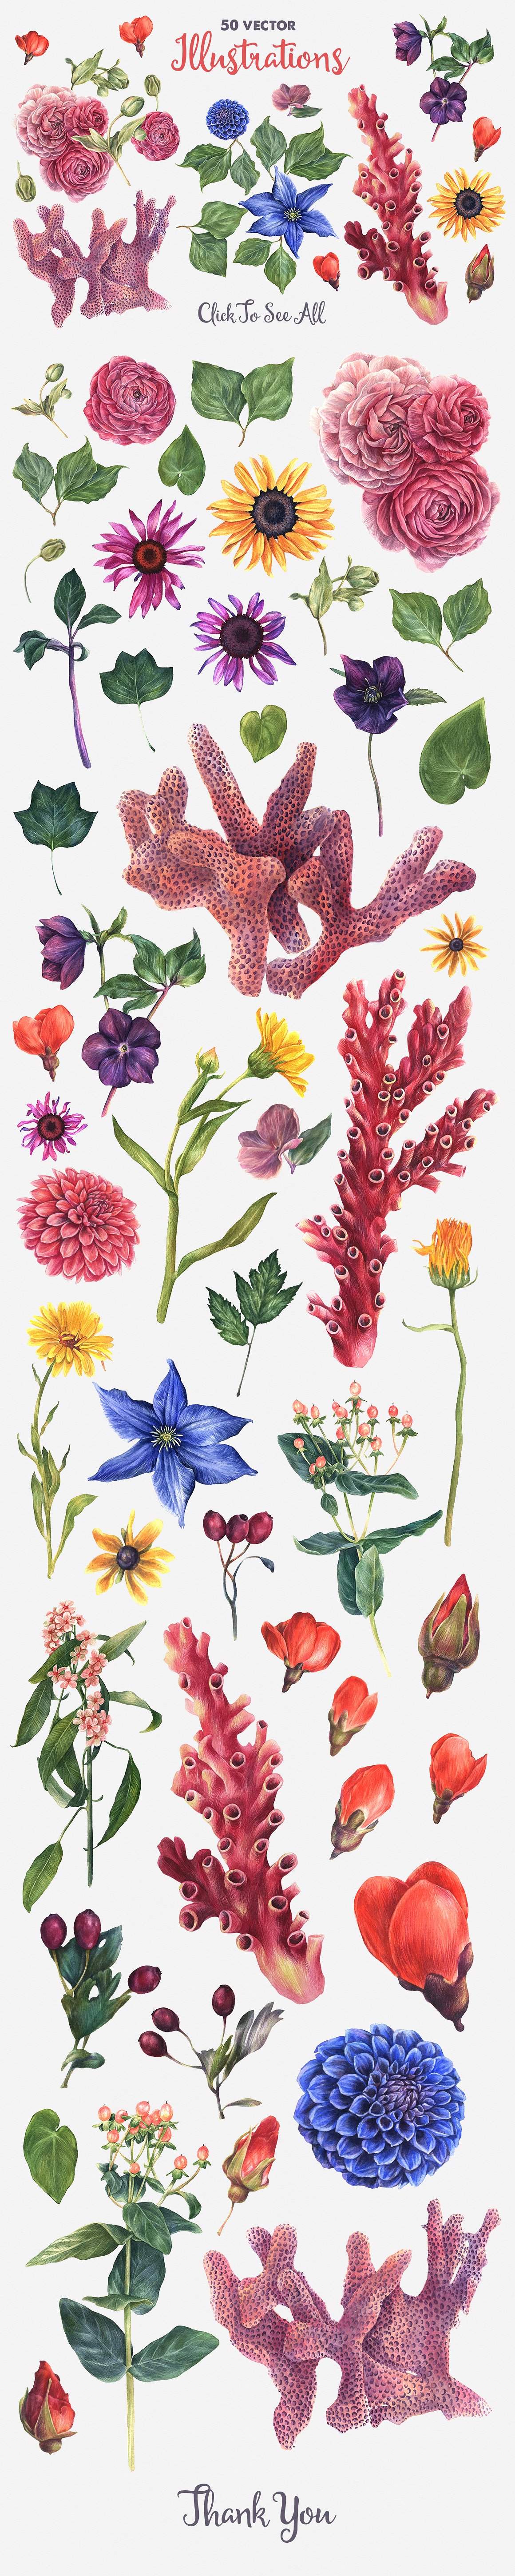 海洋主题矢量花卉海洋生物插图素材 Antique-Botan